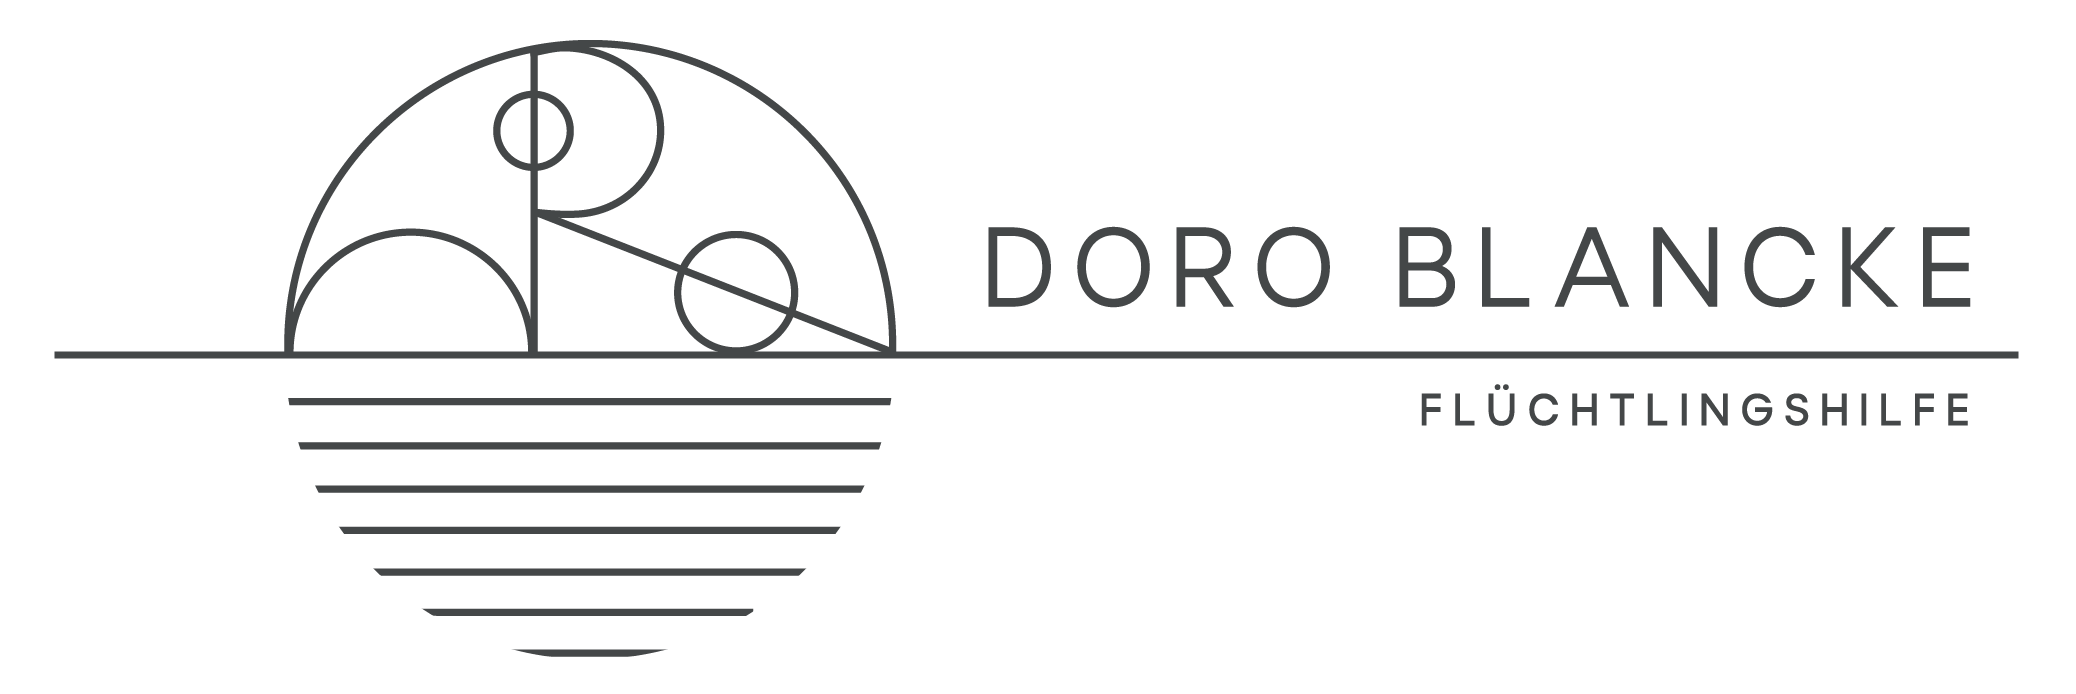 Flüchtlingshilfe Doro Blancke logo